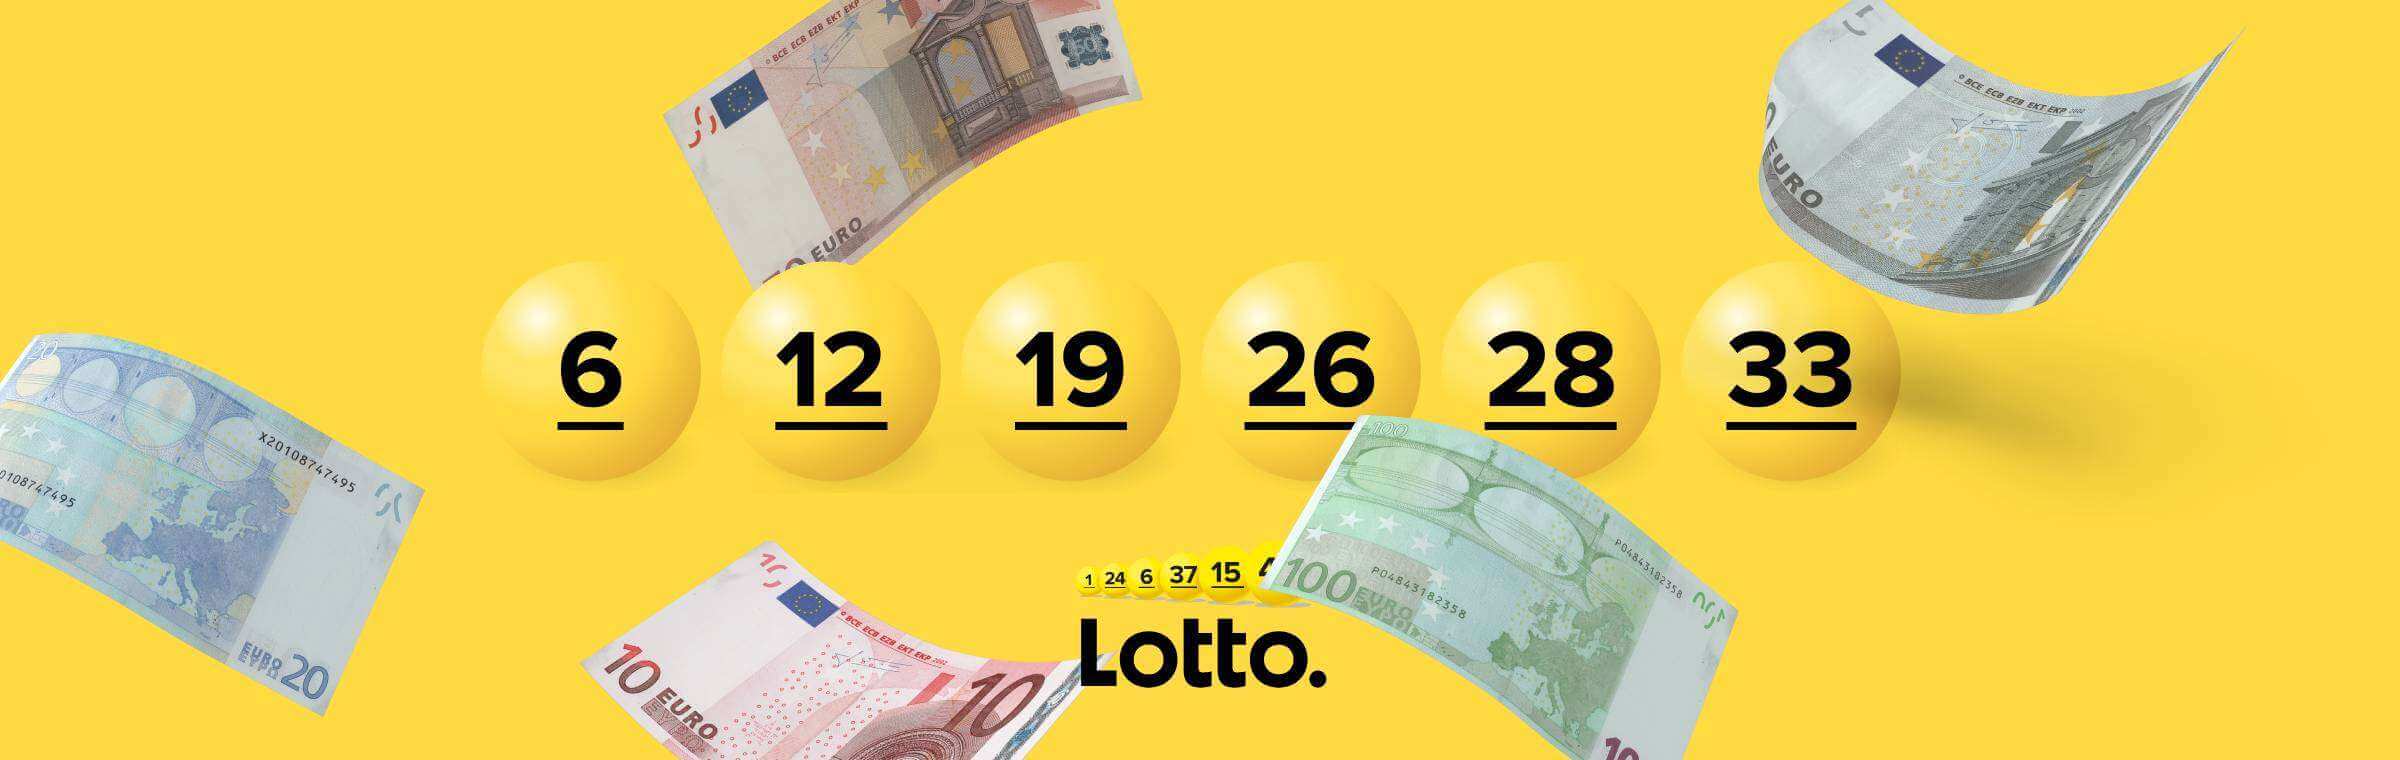 logo van de Lotto Lotterij met brieven geld